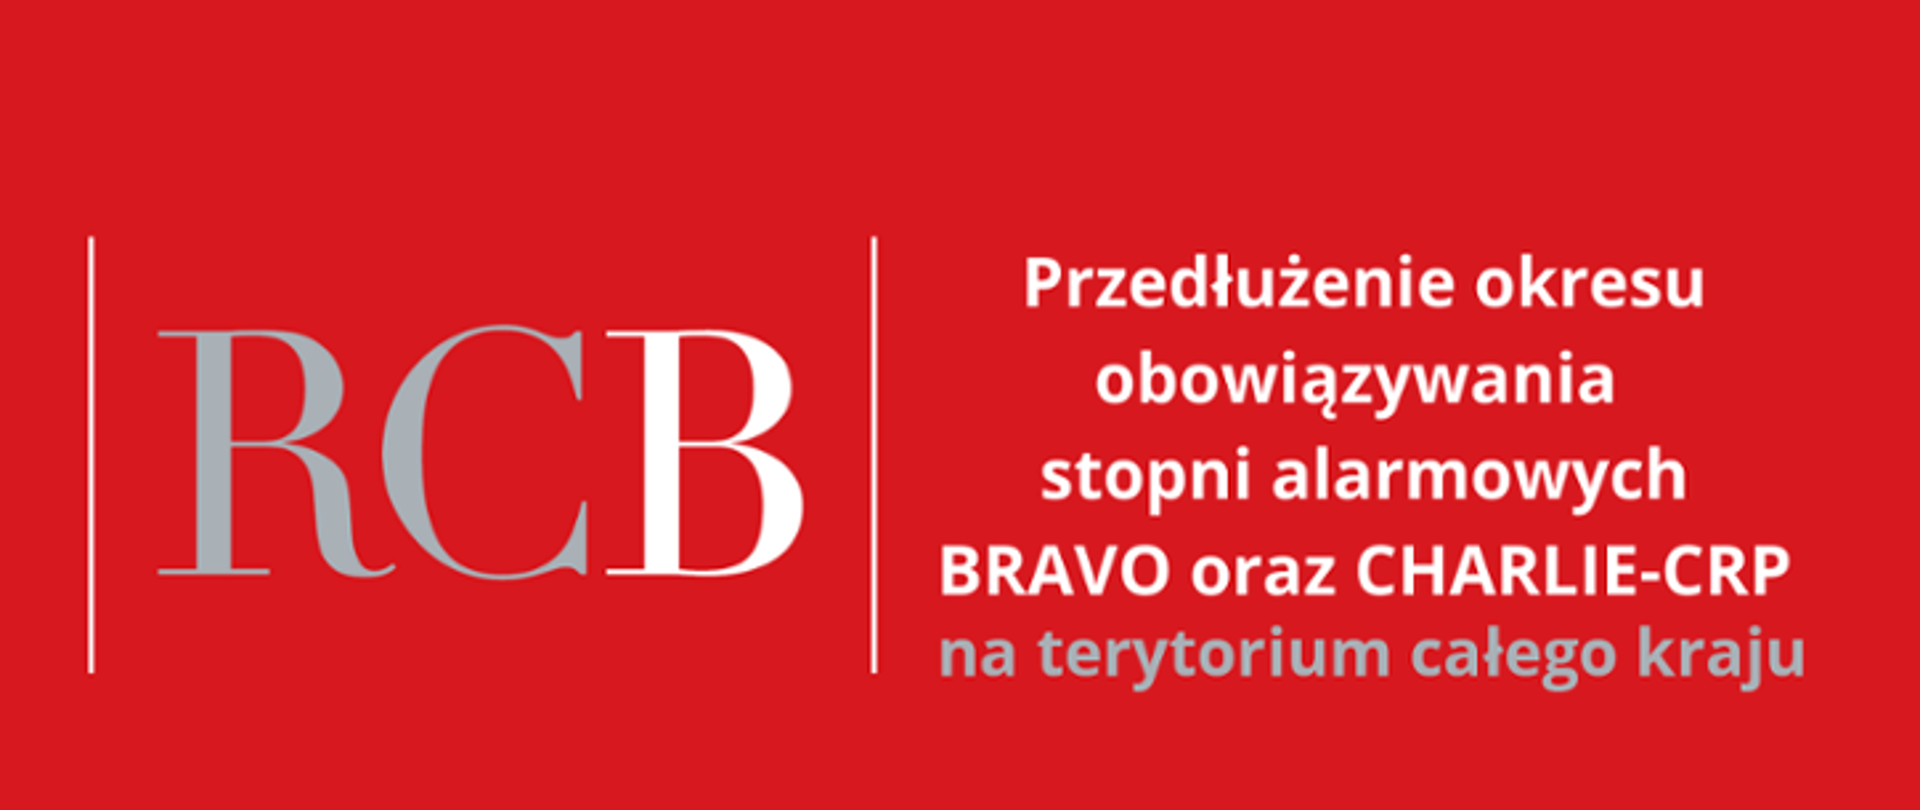 Informacja o alercie RCB na czerwonym tle, napis "przedłużenie obowiązywania stopni alarmowych BRAVO oraz CHARLIE-CRP na terytorium całego kraju".